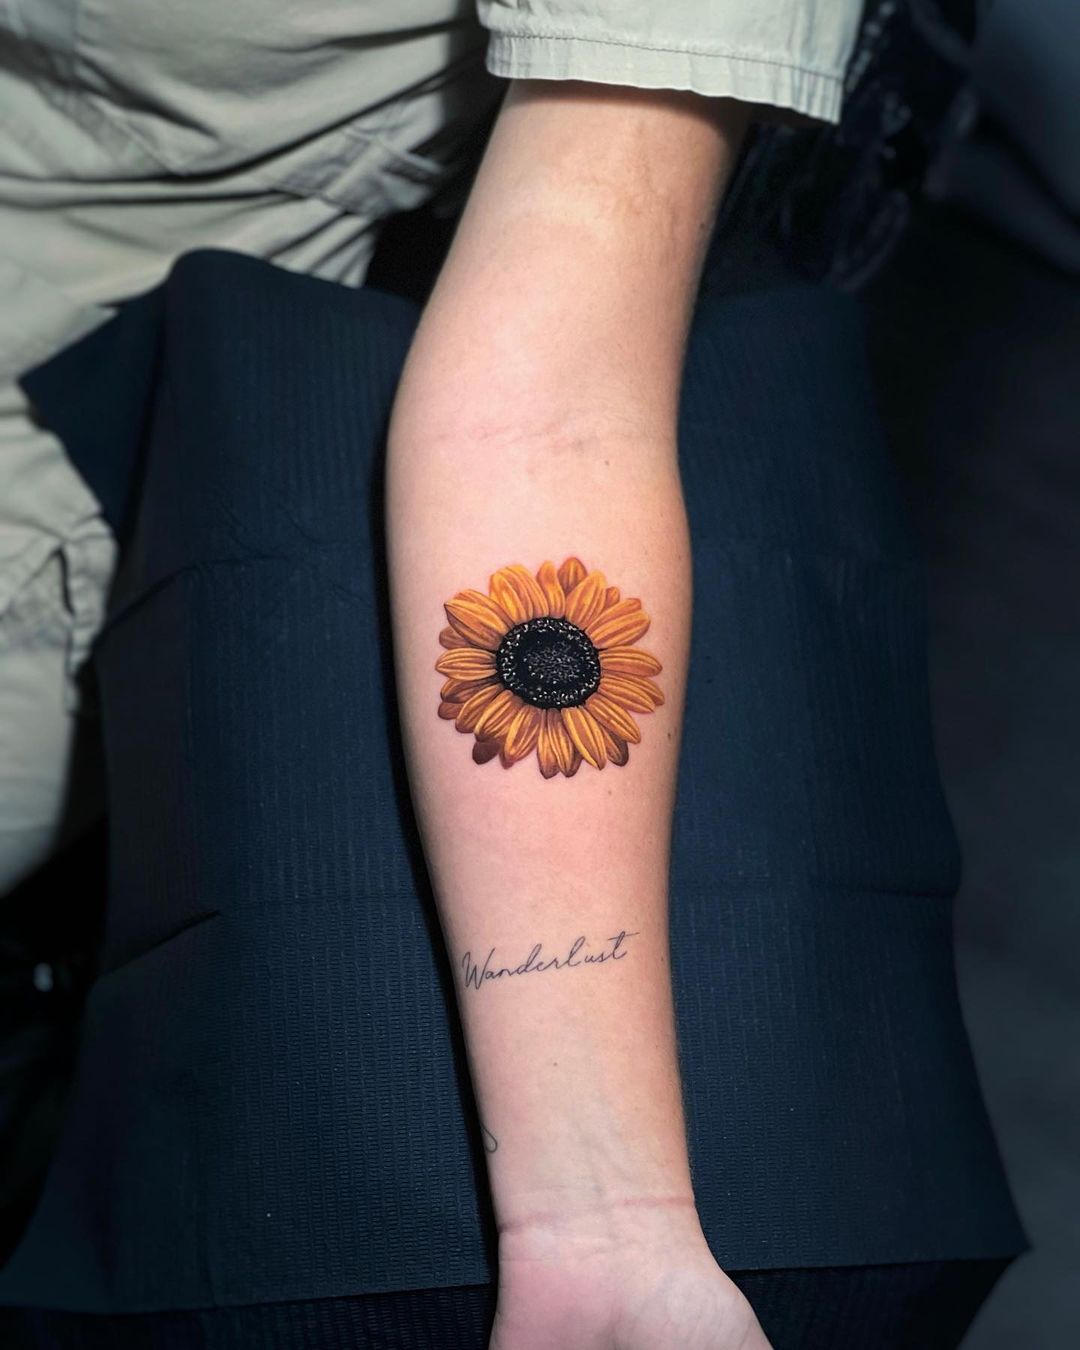 Sunflower Temporary Tattoo / Floral Tattoo / Small Tattoo / Temp Tattoo -  Etsy